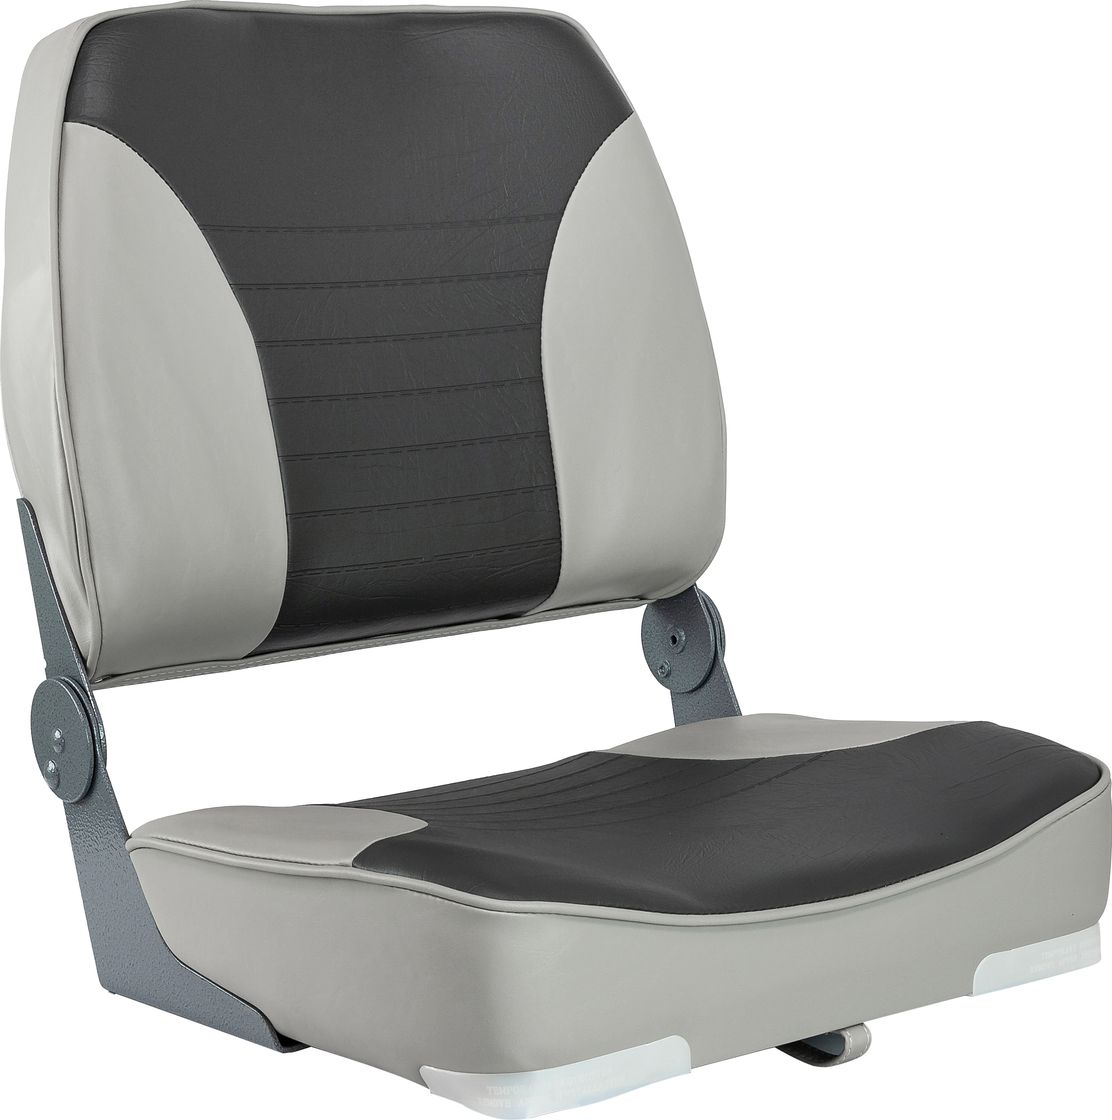 Кресло XXL складное мягкое двухцветное серый/темно-серый 1040693 кресло складное мягкое skipper серый темно серый 1061017